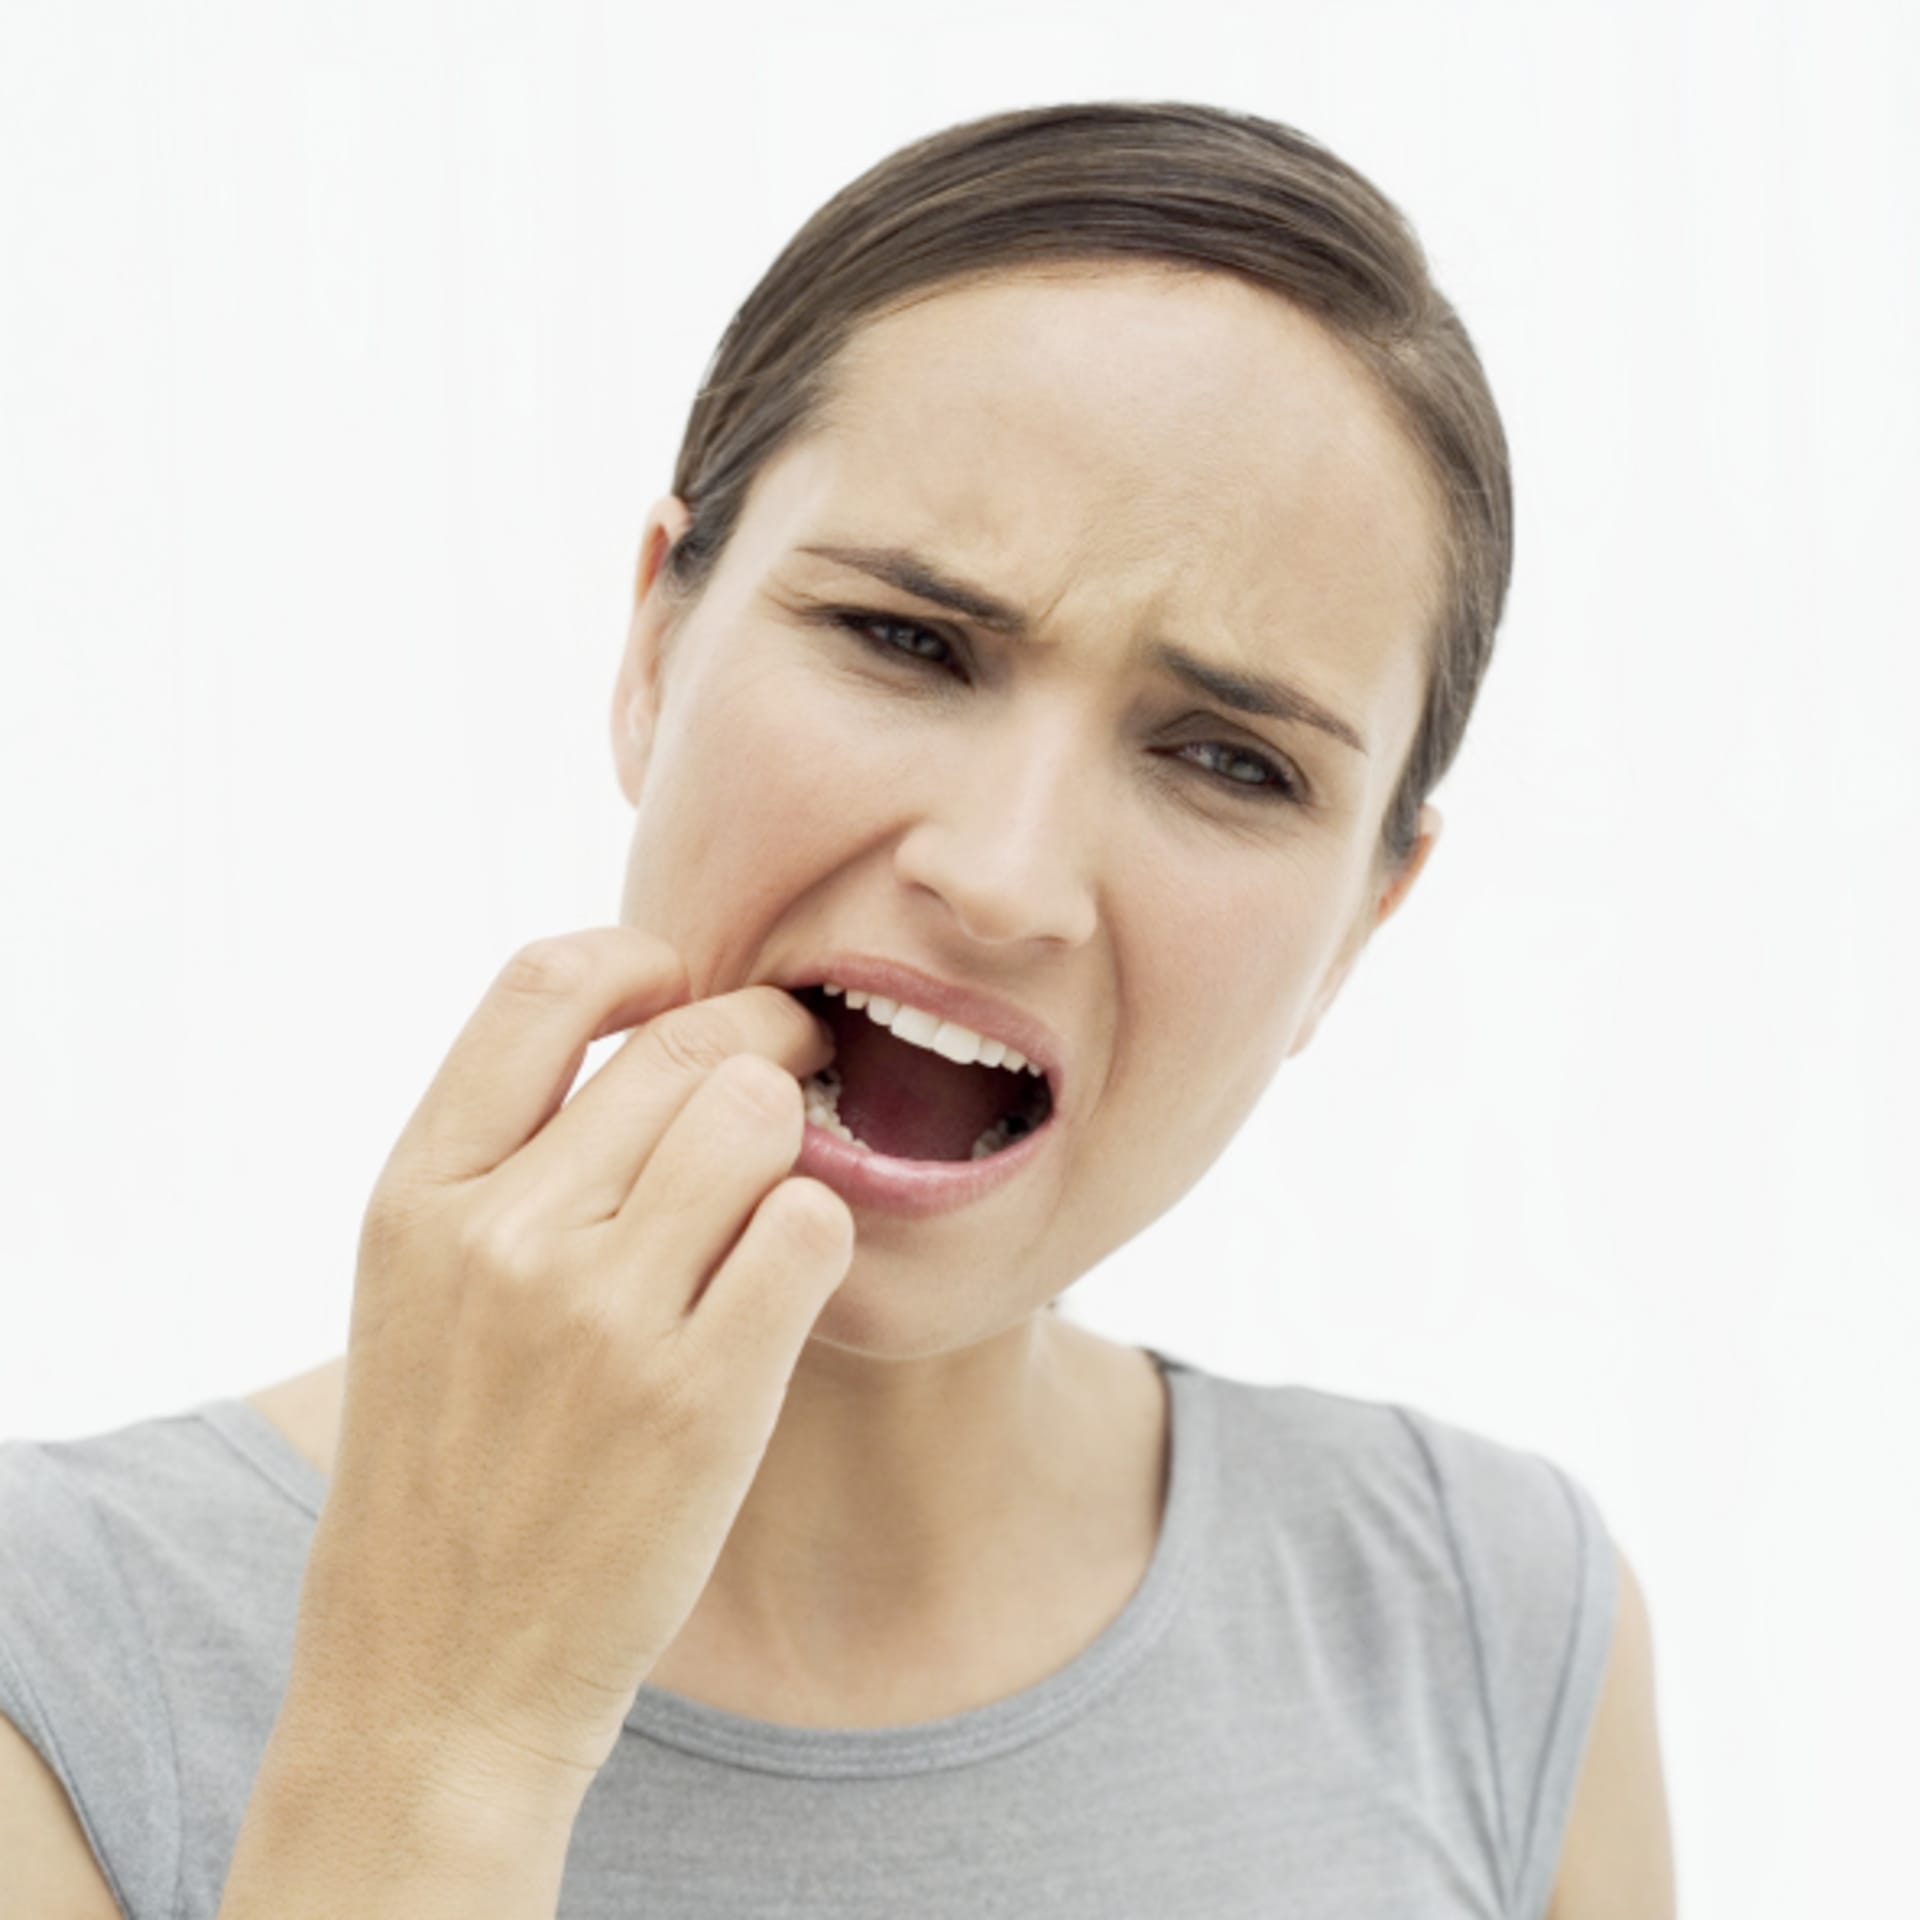 Zdravý zub vám jen tak nepraskne. Ohrožené jsou jen nějakým způsobem přetížené nebo oslabené zuby